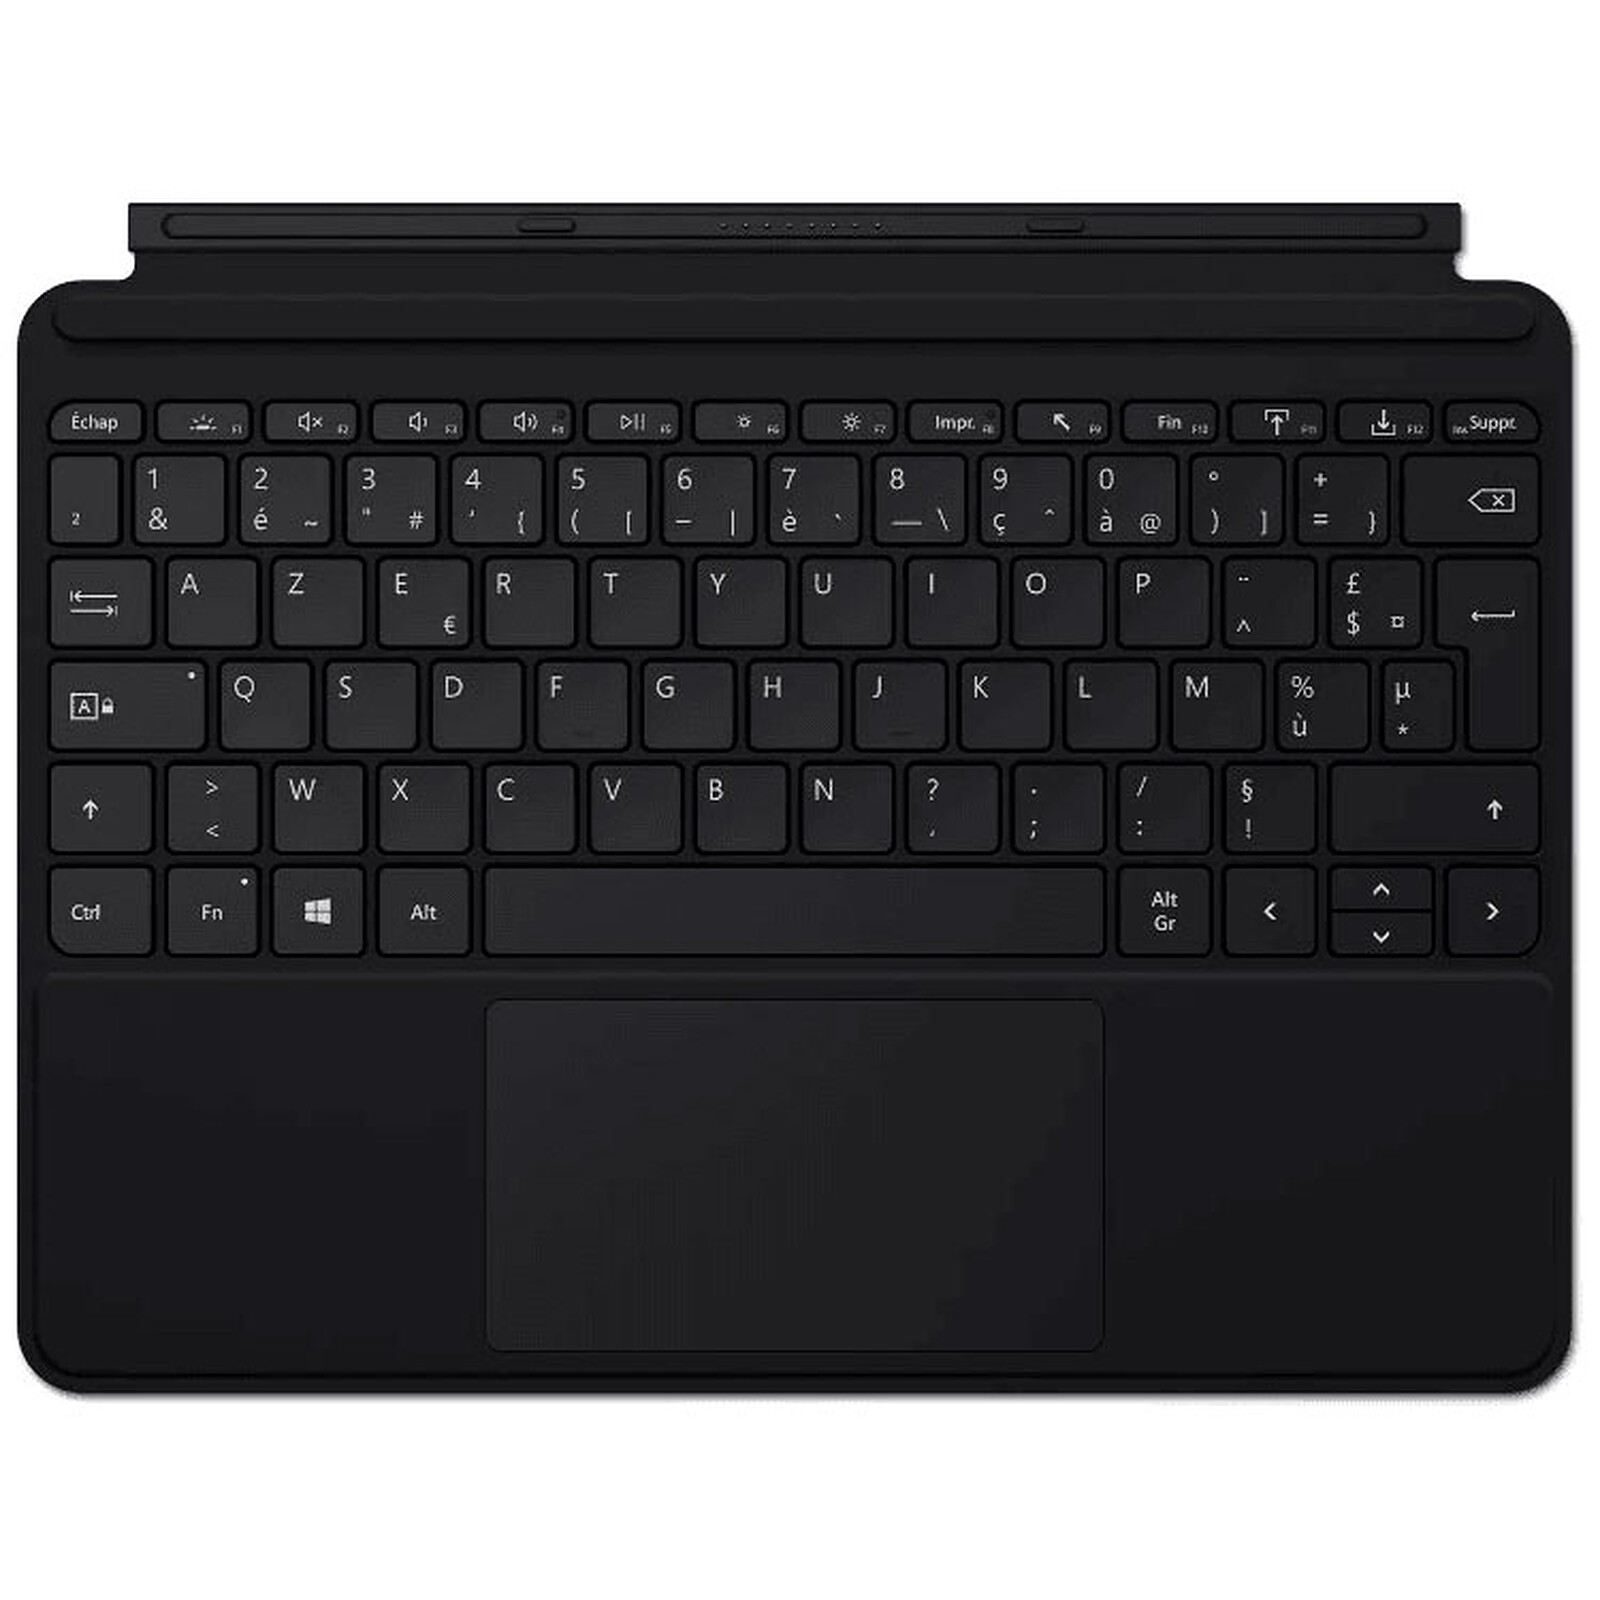 Surface Go 3 - Le plus portable des tablettes et des ordinateurs